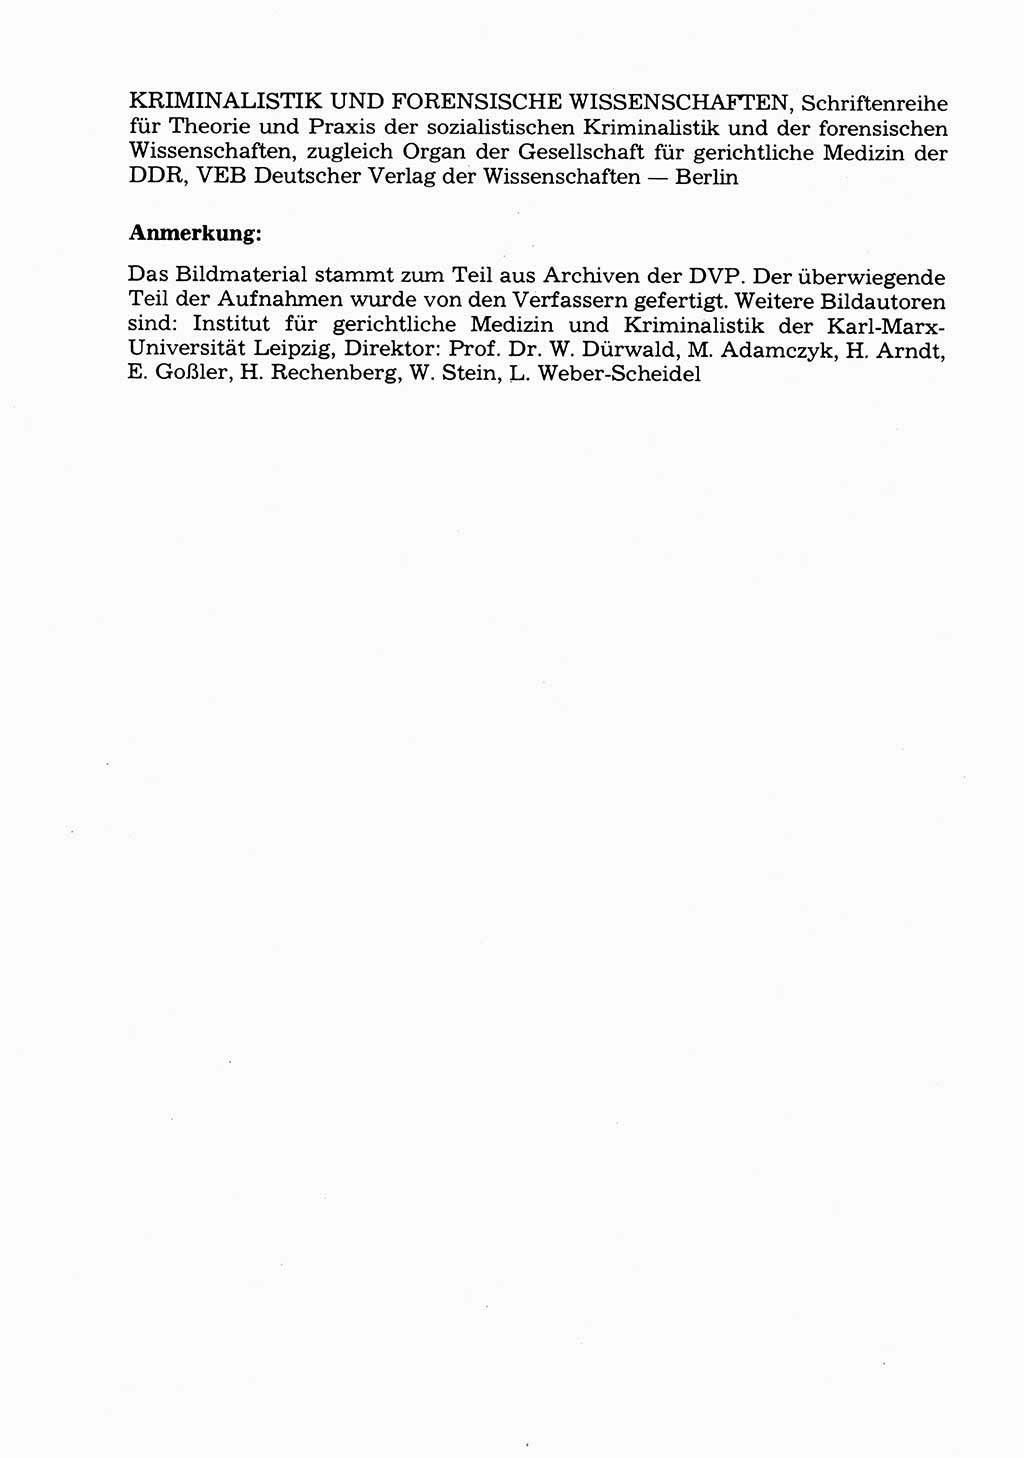 Wörterbuch der sozialistischen Kriminalistik [Deutsche Demokratische Republik (DDR)] 1981, Seite 496 (Wb. soz. Krim. DDR 1981, S. 496)